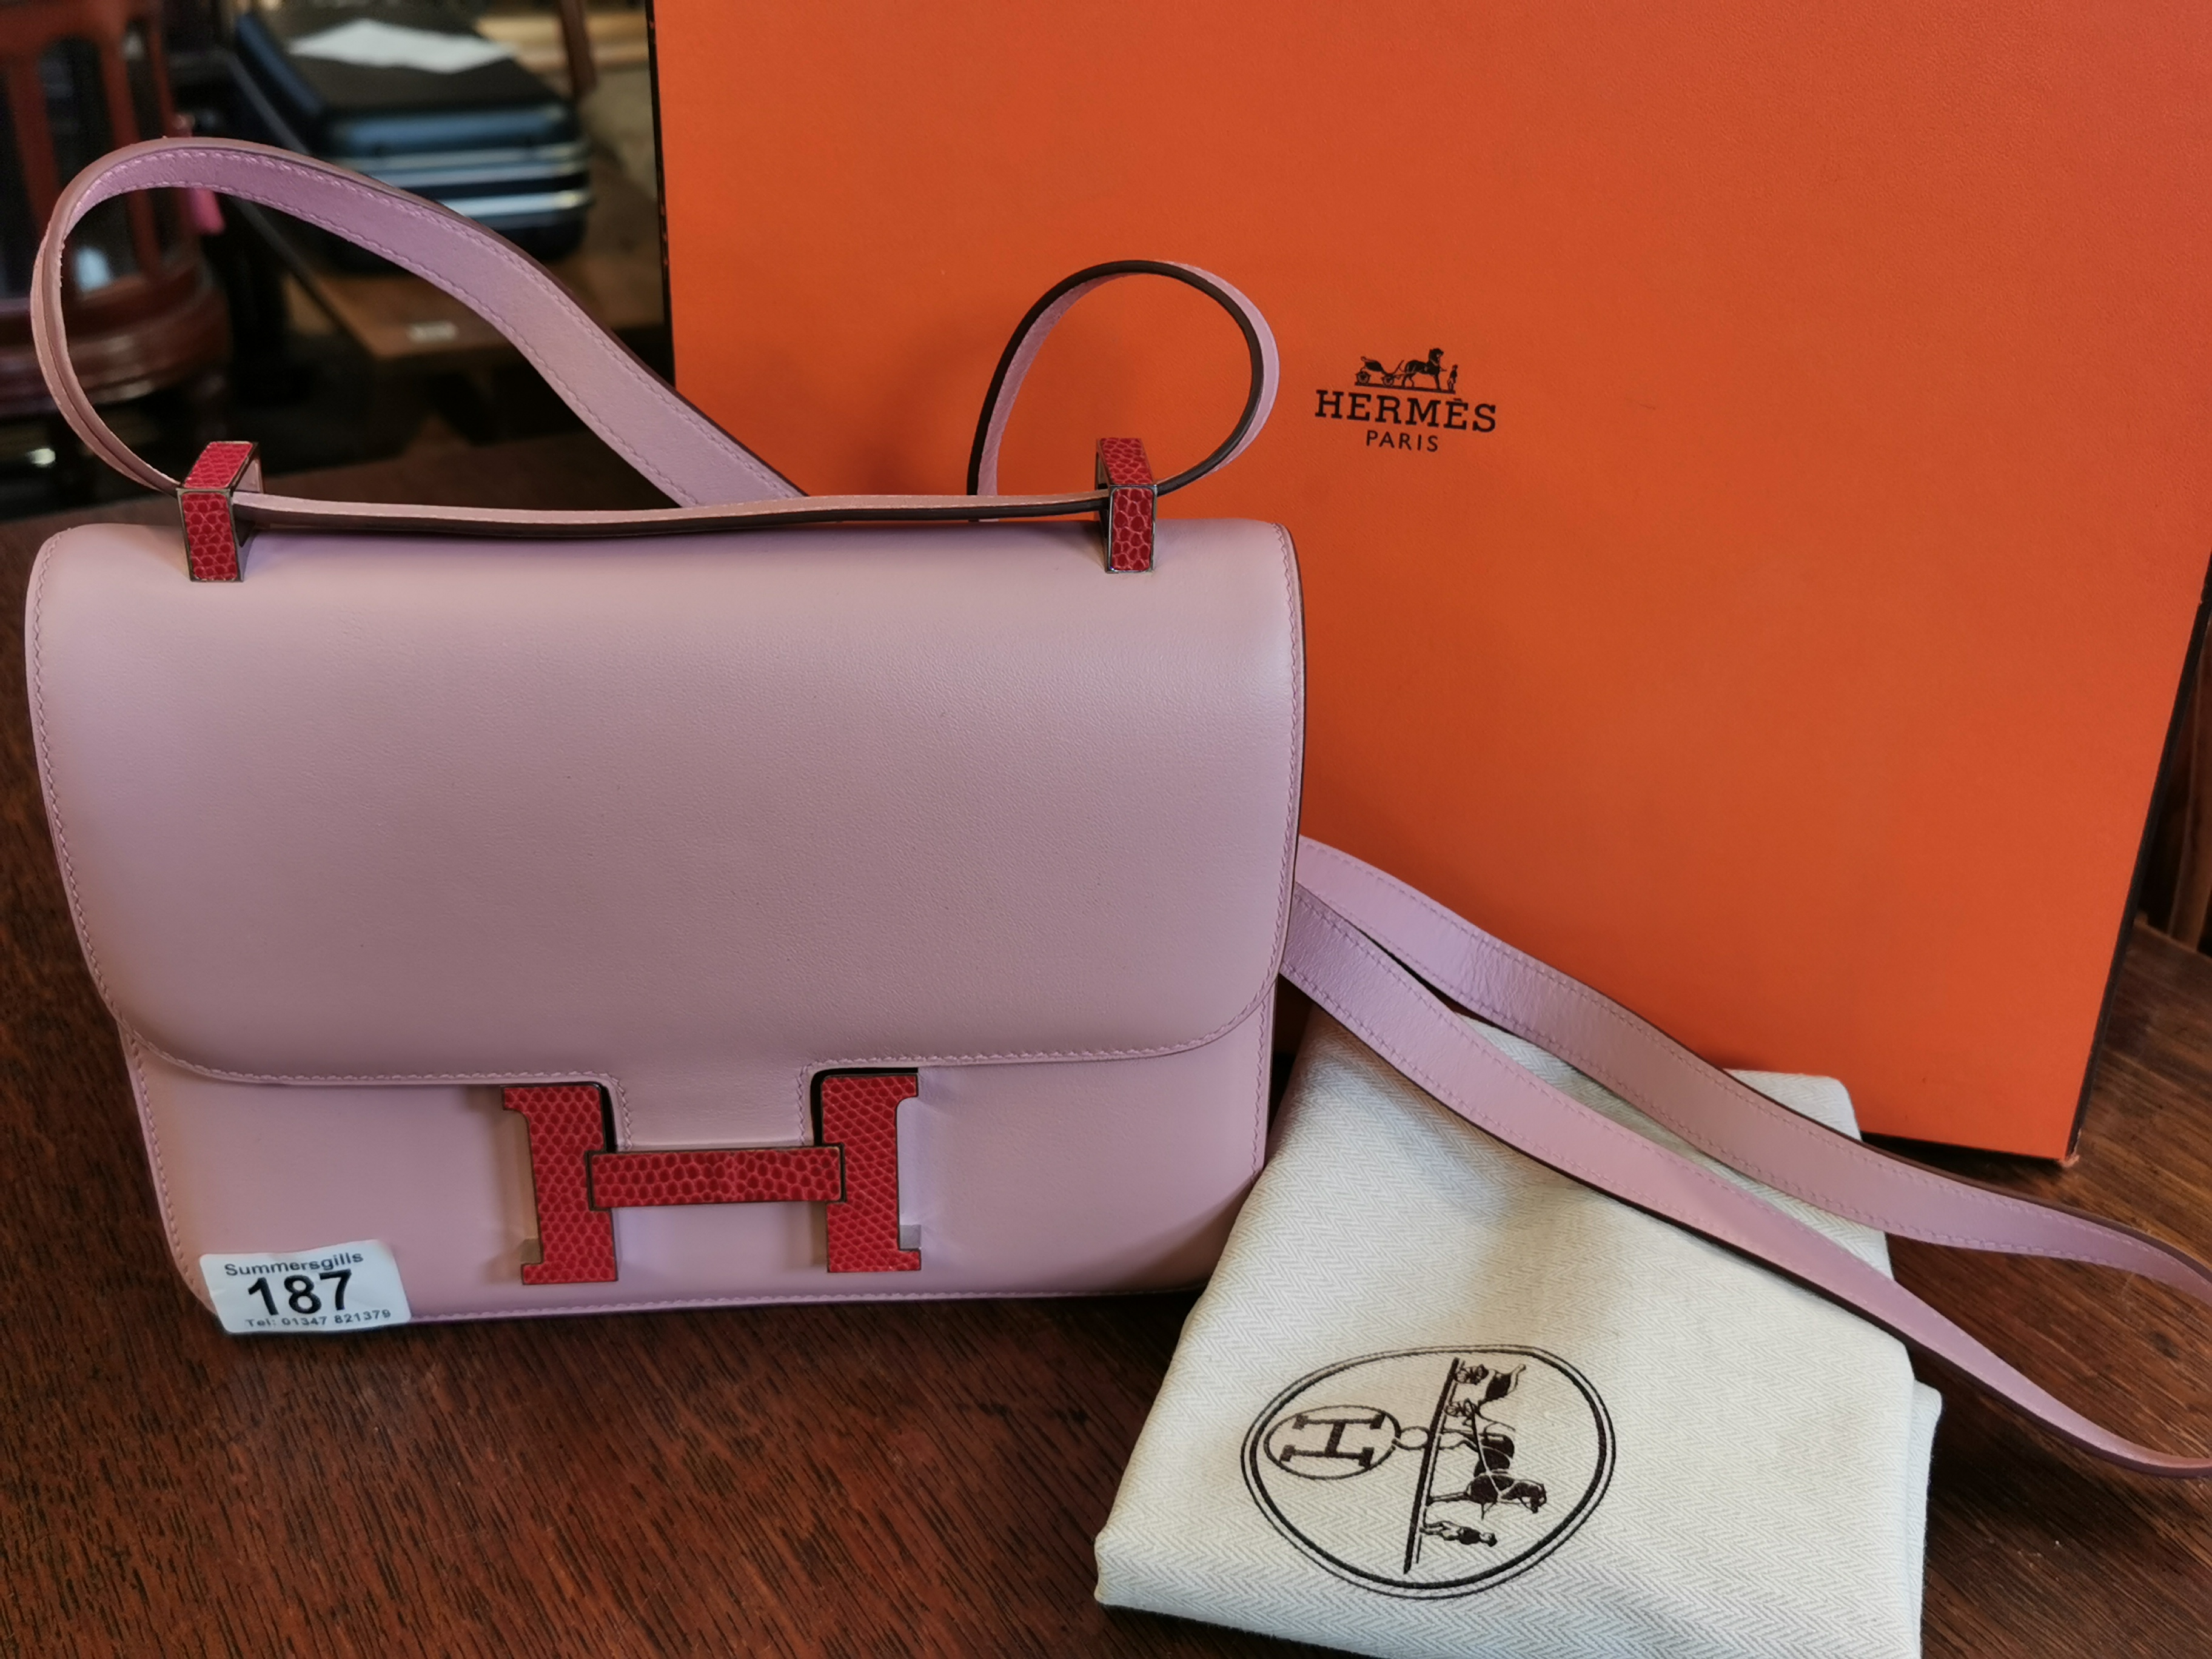 Boxed Hermes Pink Ladies Handbag